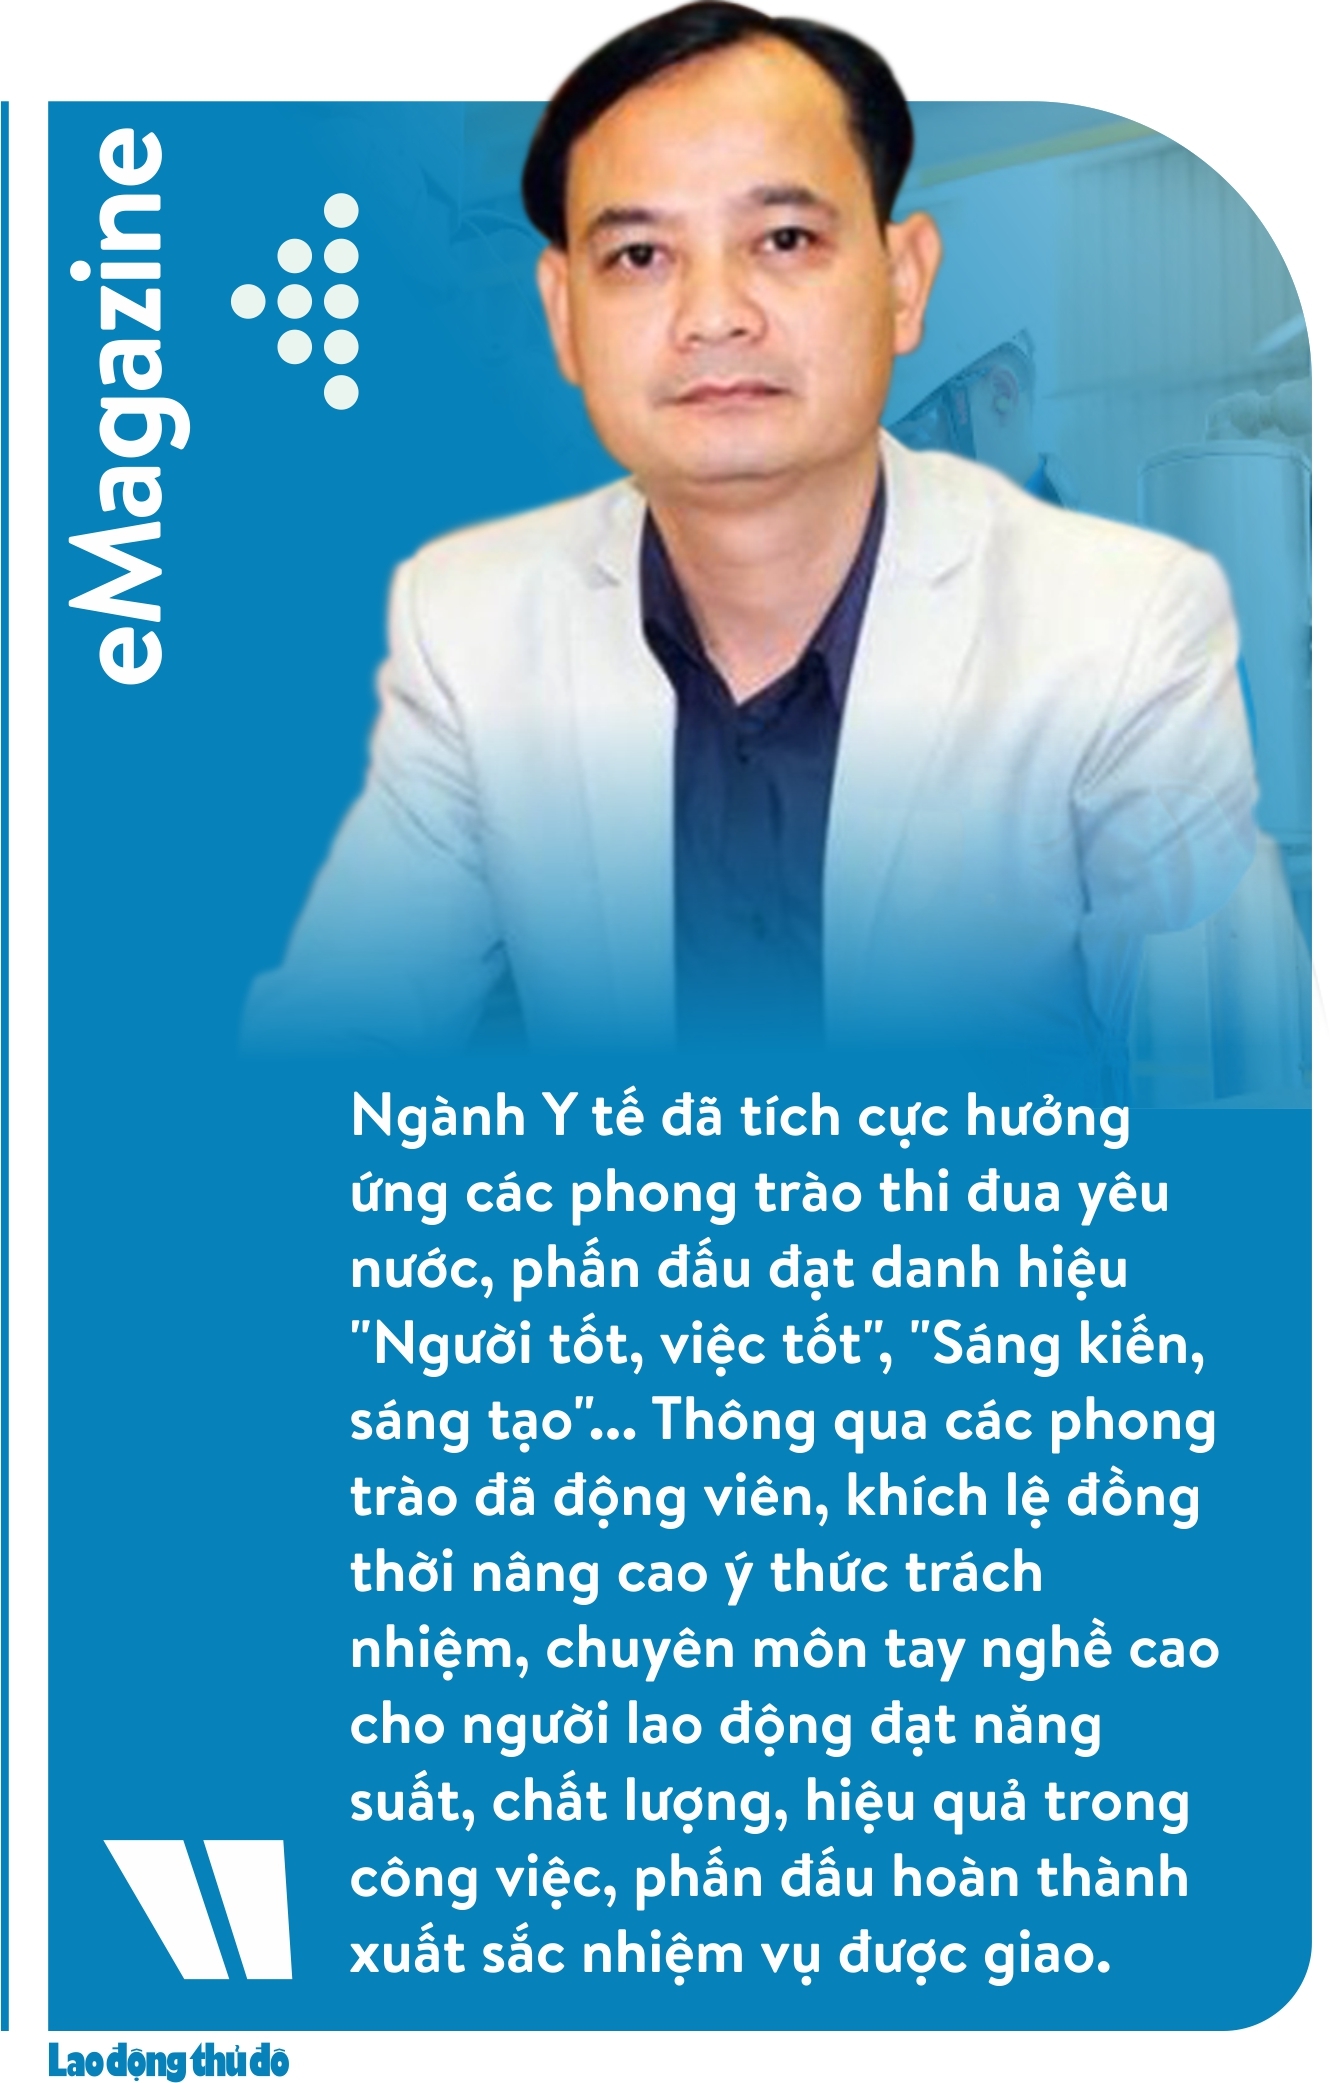 san sang truoc thach thuc cua cuoc cach mang cong nghiep 40